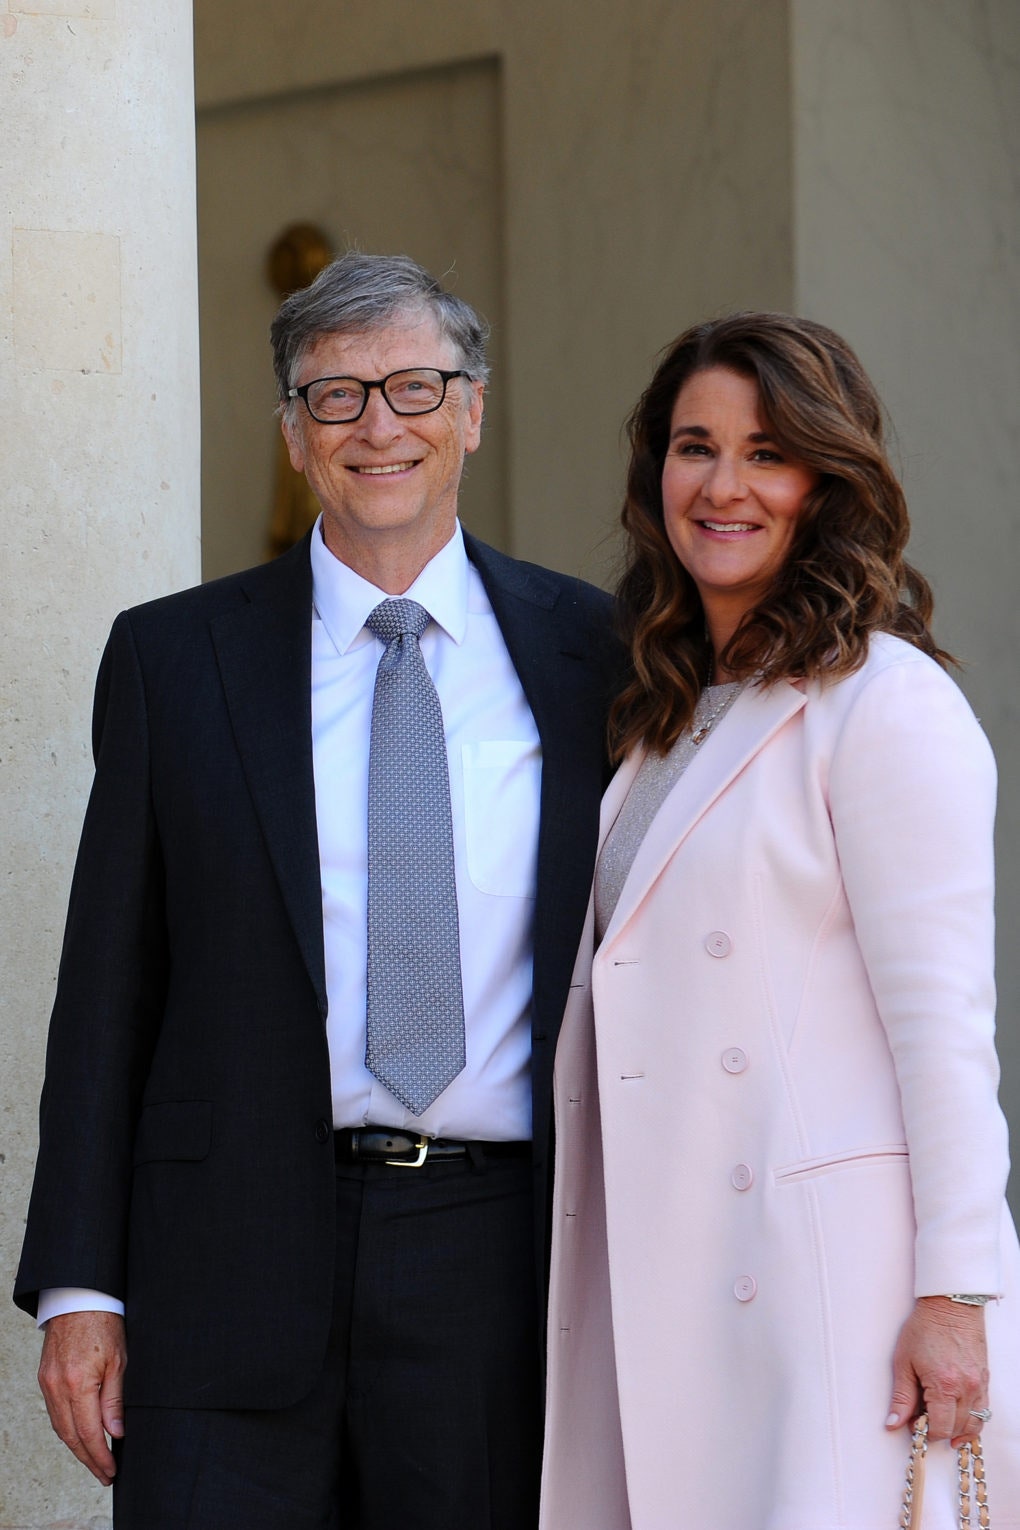 Новые подробности развода Мелинда Гейтс знала что у Билла есть «некоторые проблемы»